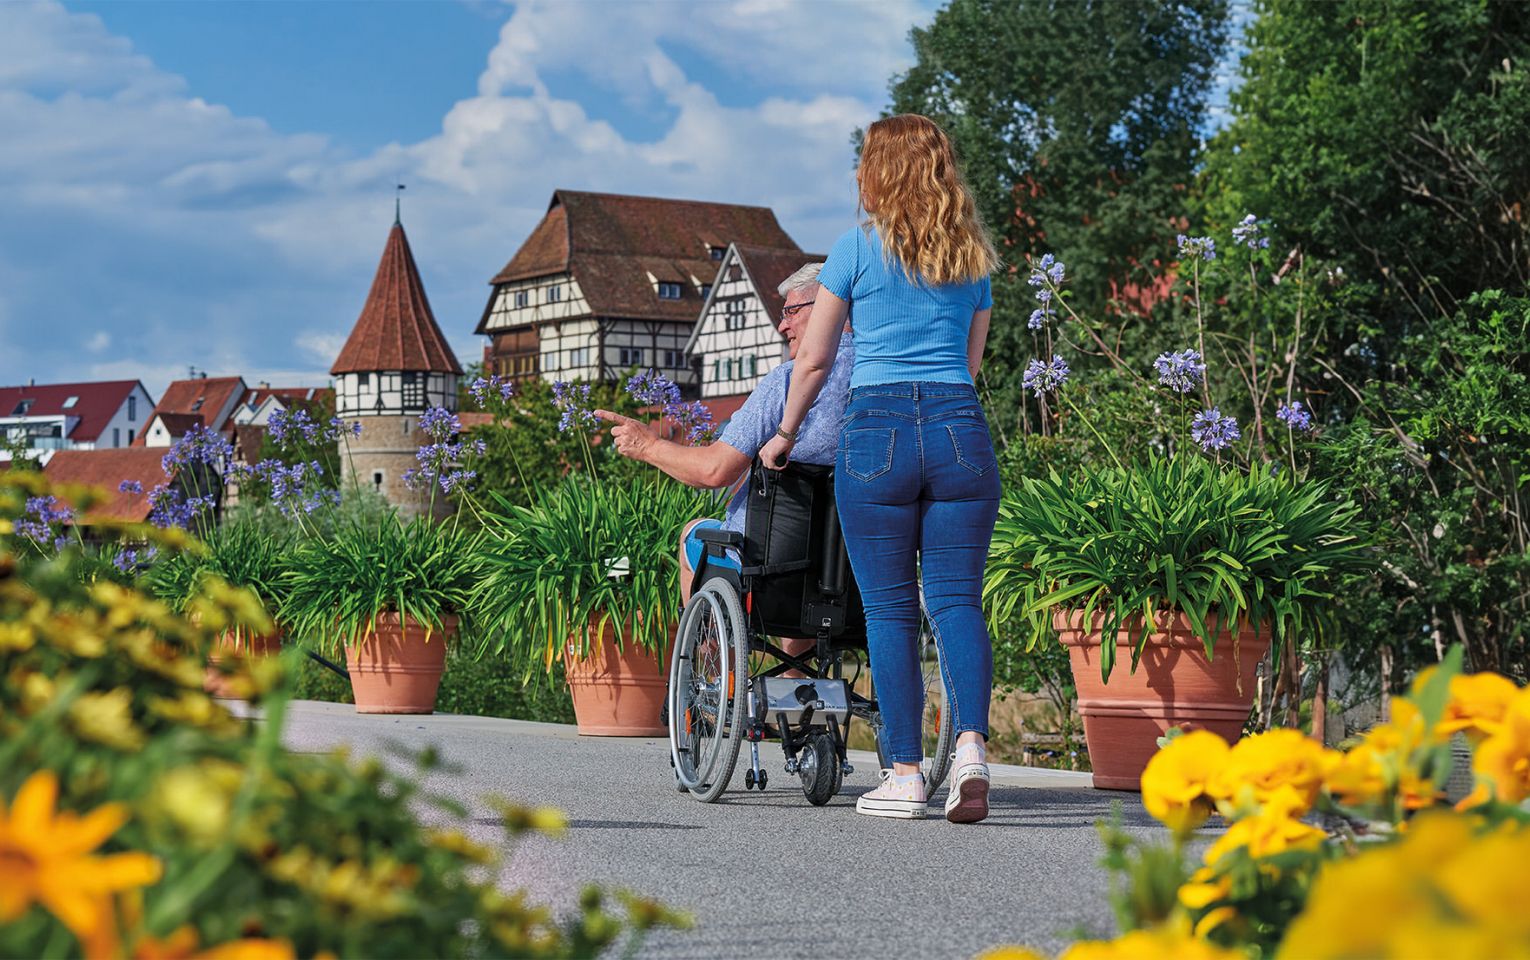 Das Bild zeigt eine jüngere Frau, die einen älteren Mann im Rollstuhl durch eine blühende Stadt schiebt. Im Hintergrund ist eine Burg zu sehen. Am Rollstuhl befindet sich eine AAT Schiebehilfe, die die Frau beim Schieben des Rollstuhls entlastet. 